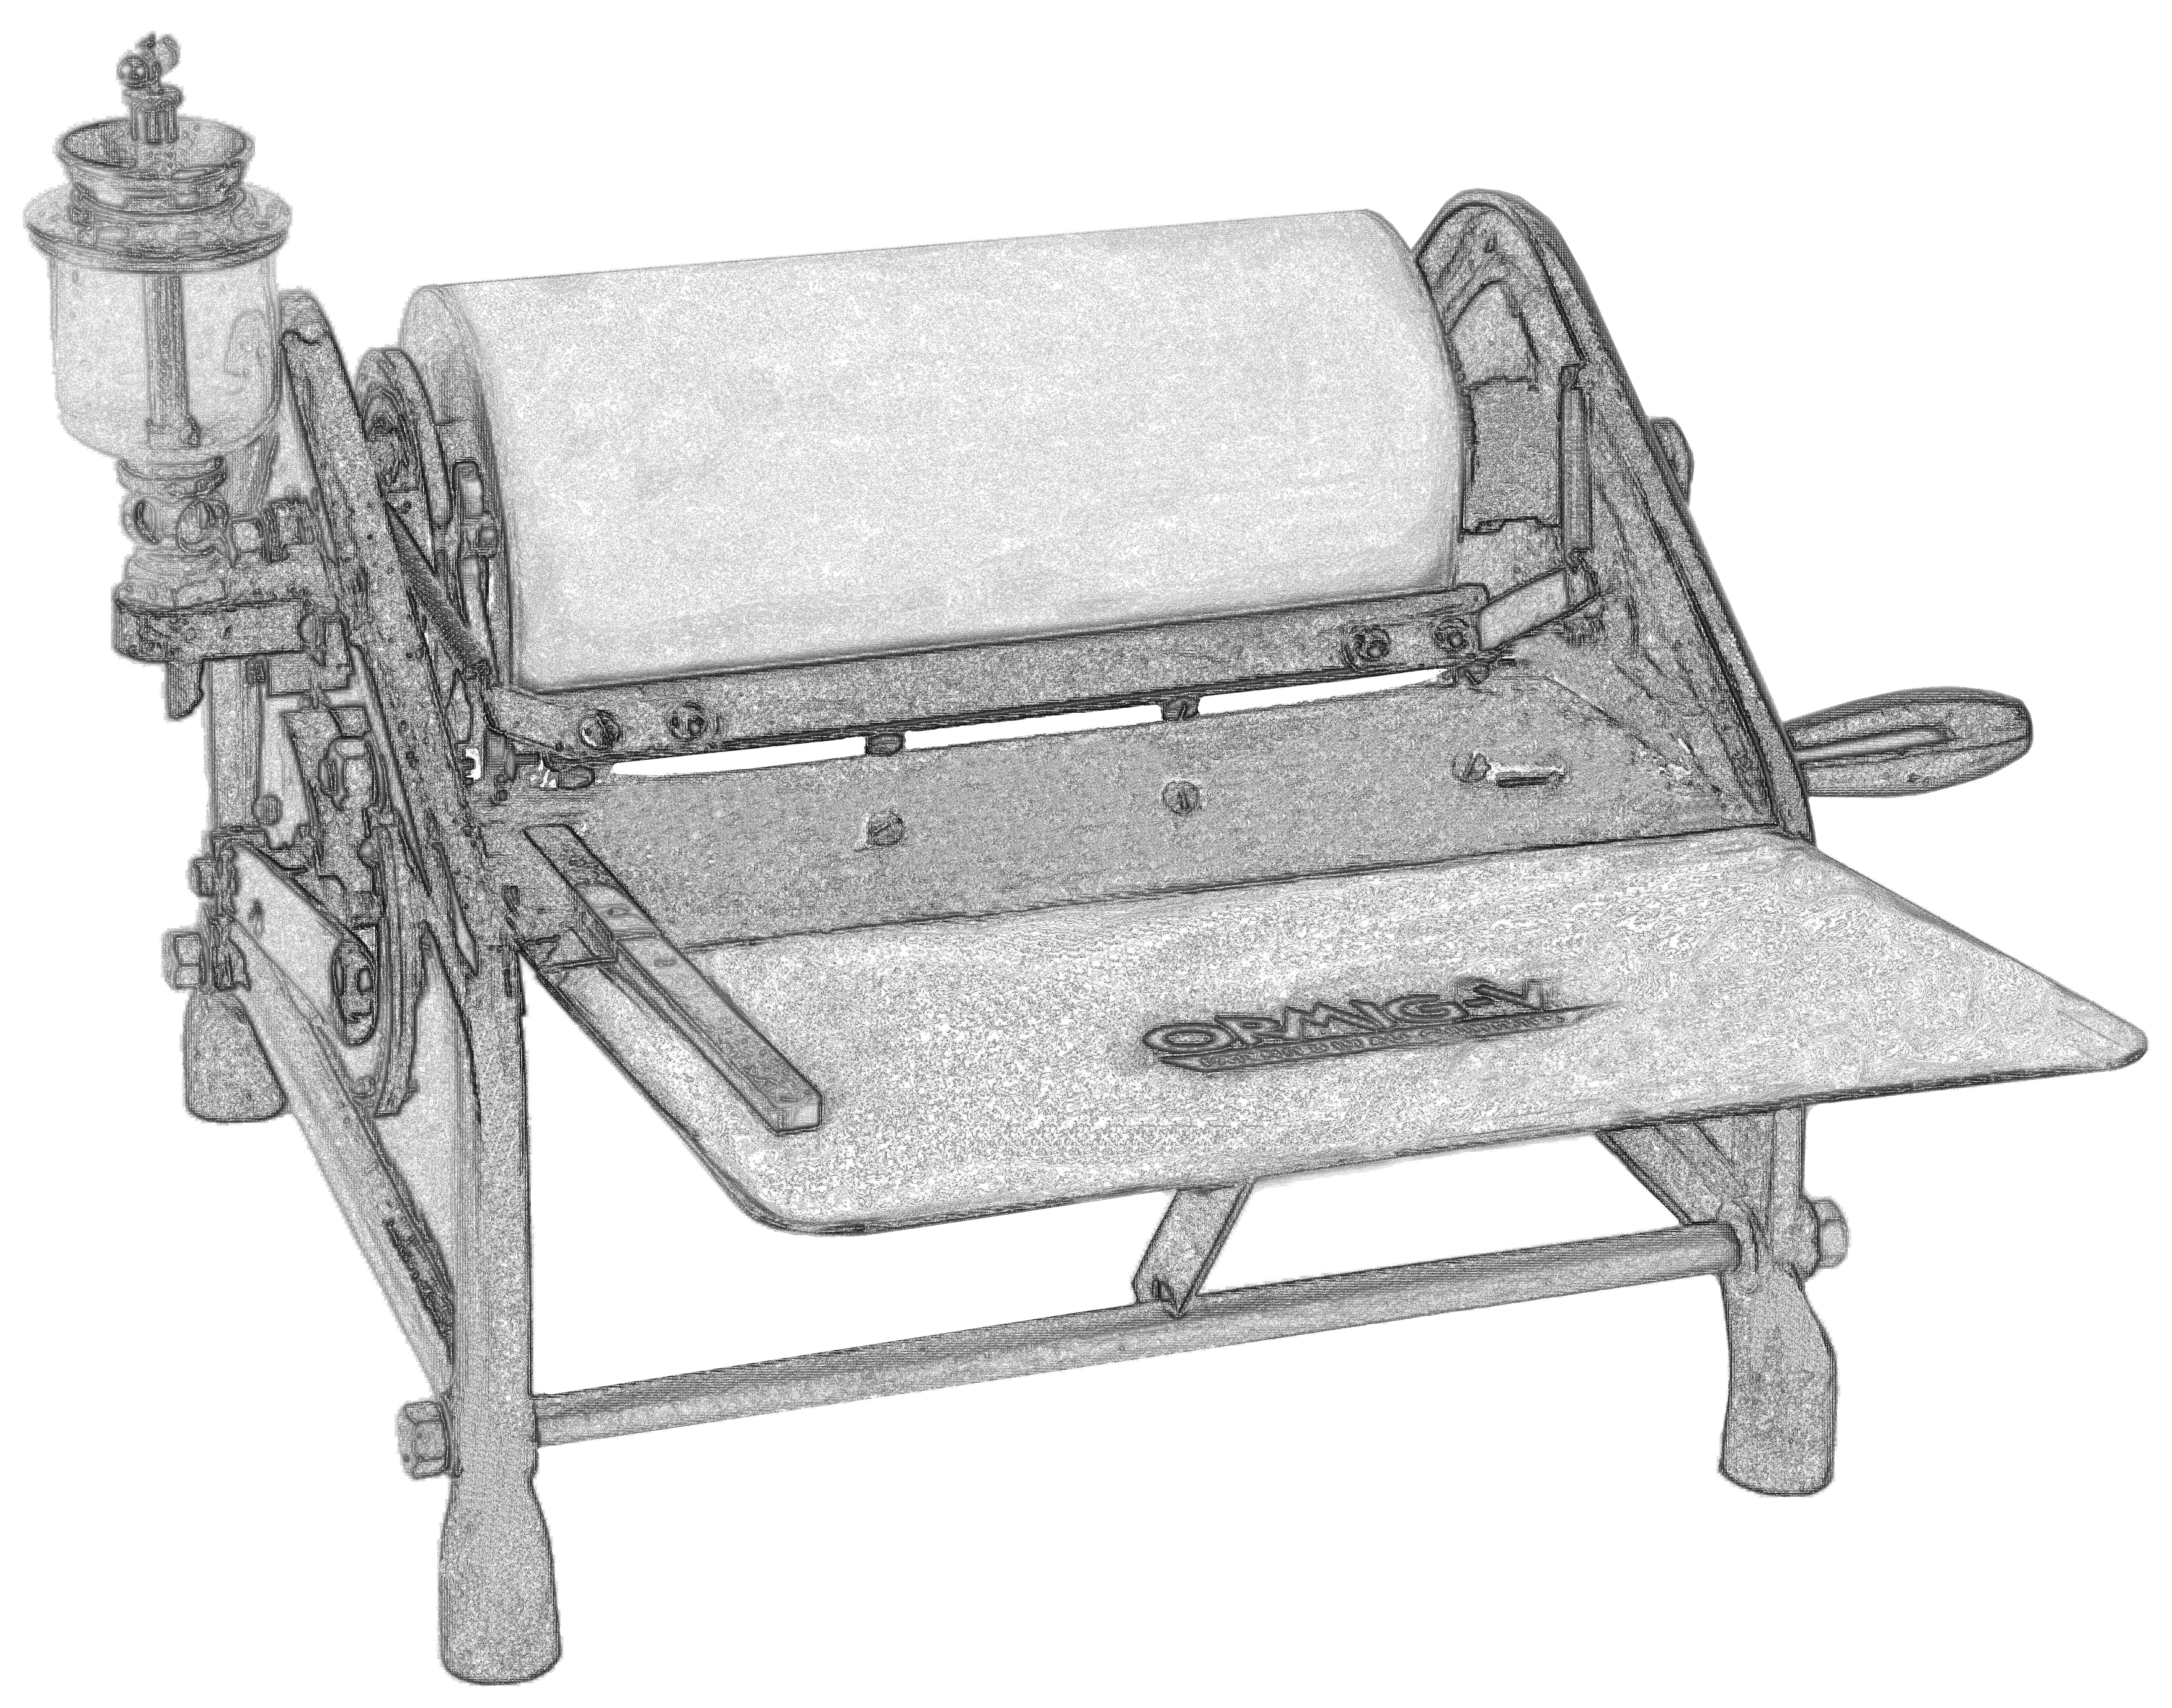 Matrizendrucker ORMIG-V, mit Papierzuführungsblech, rechts Kurbel und linksseitiges Gefäss für Spiritus, in der Mitte die Drucktrommel, Privatedition